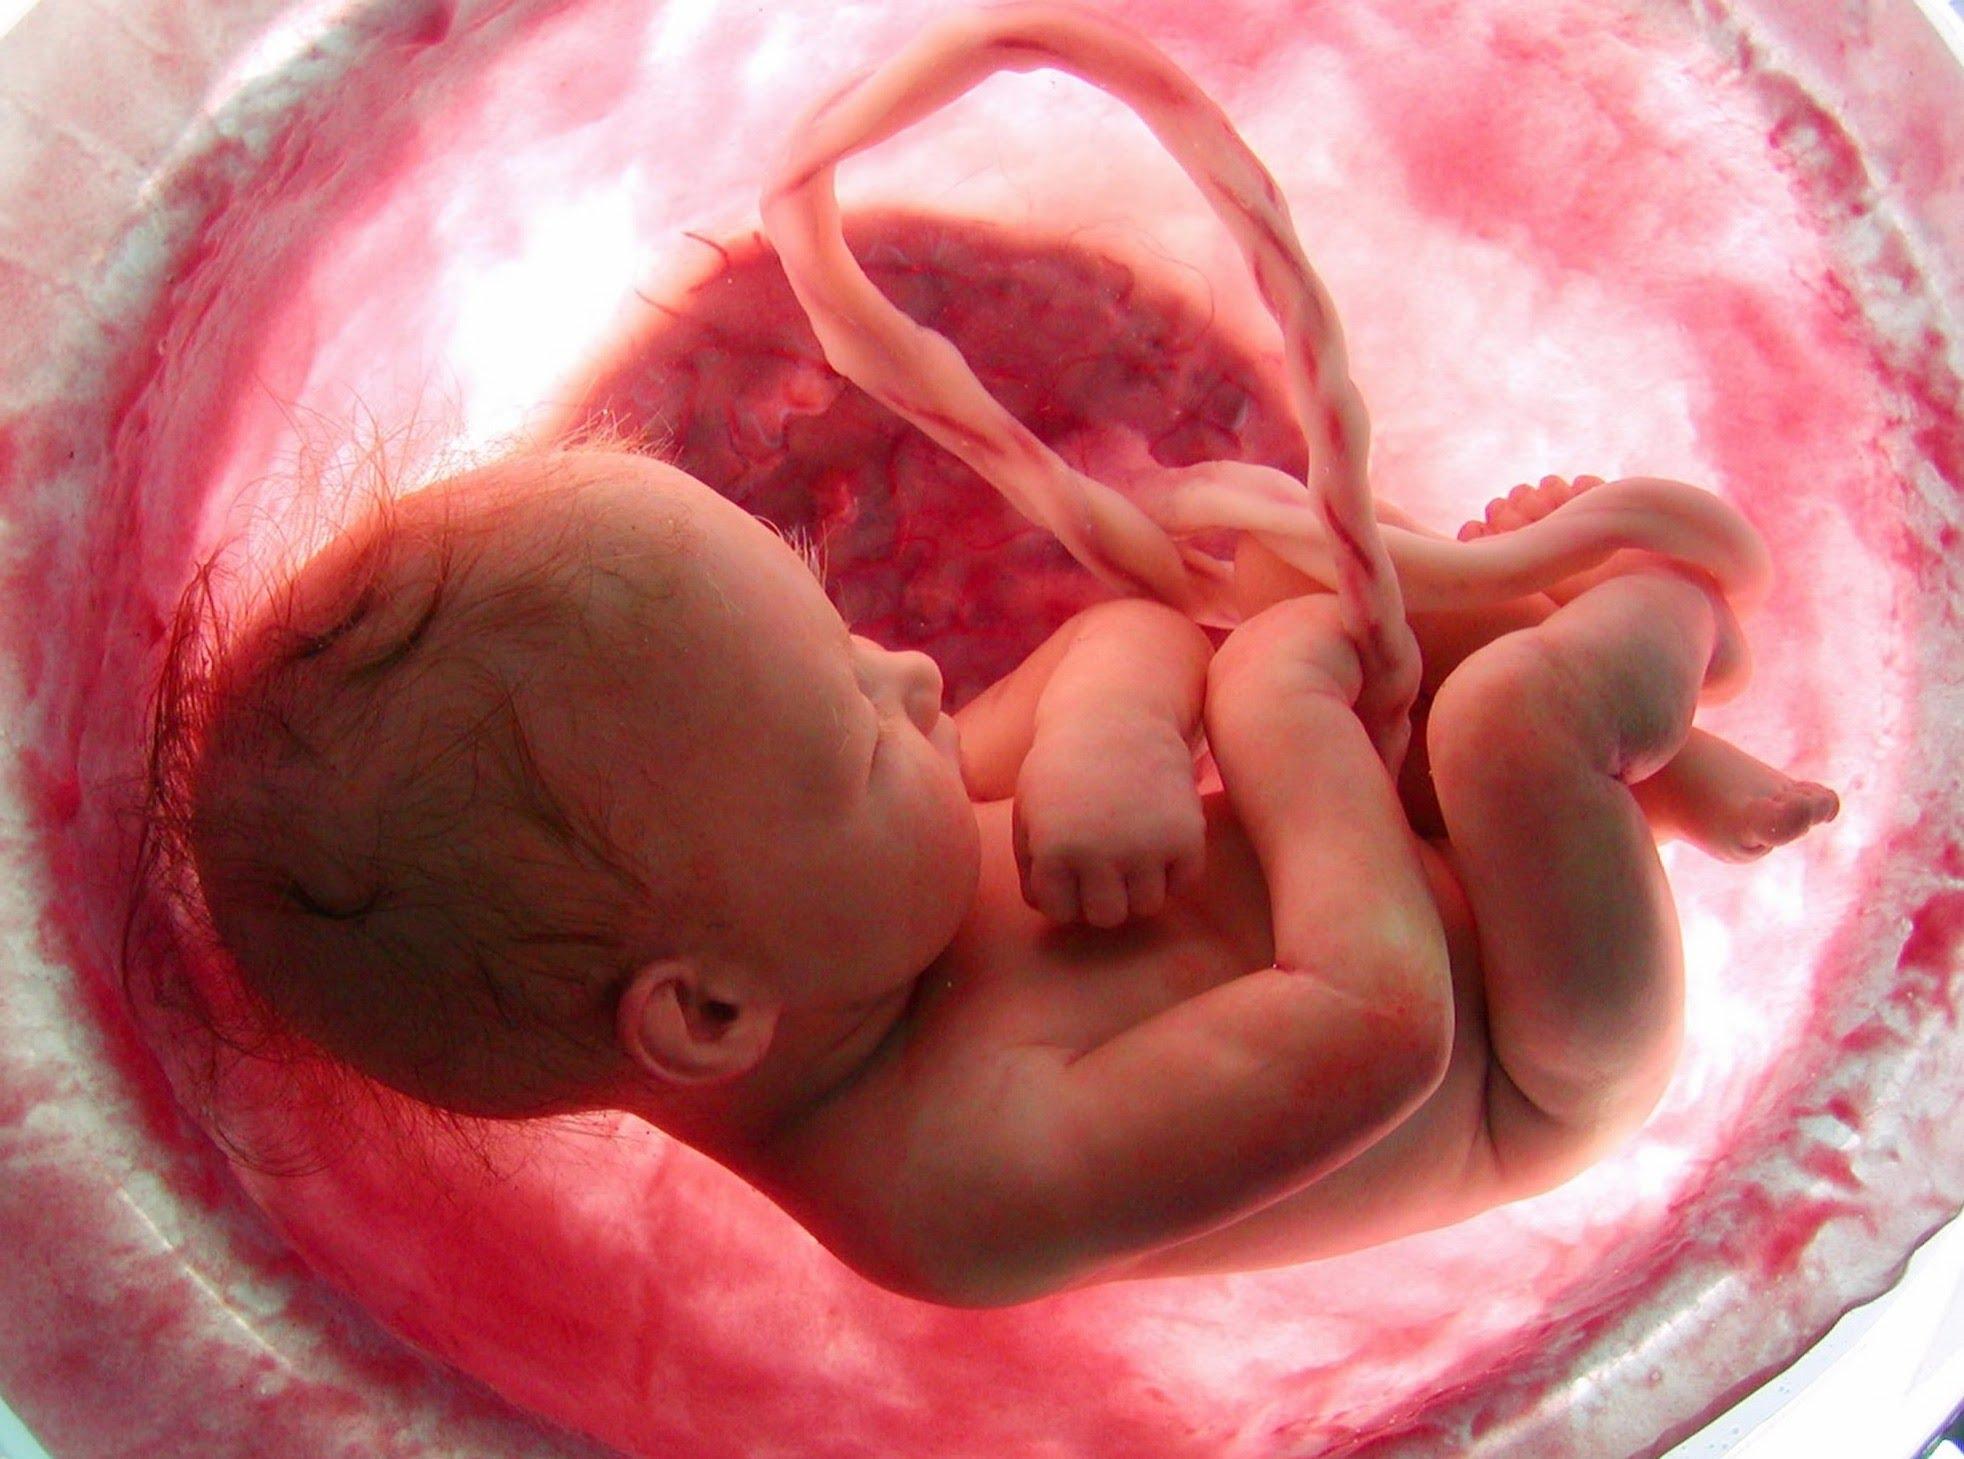 Nașterea: ce se întâmplă cu copilul în timpul contracțiilor și împingerii